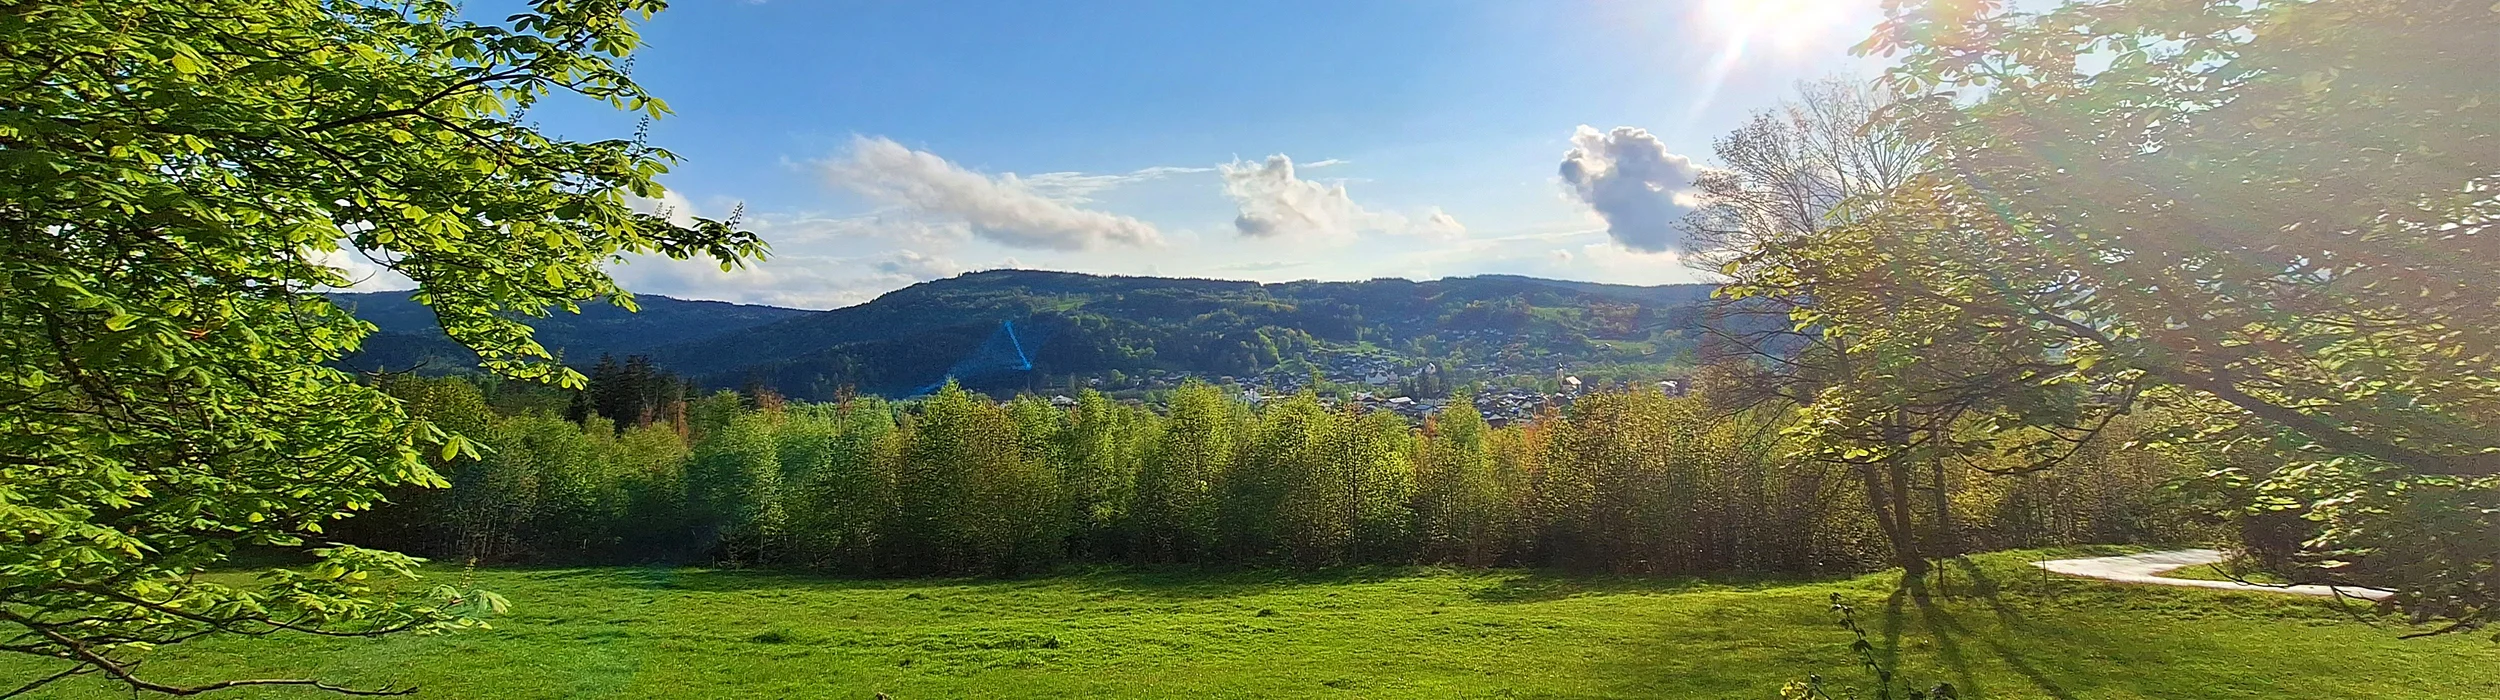 Sicht über Frauenau - Urlaubsort im bayerischen Wald